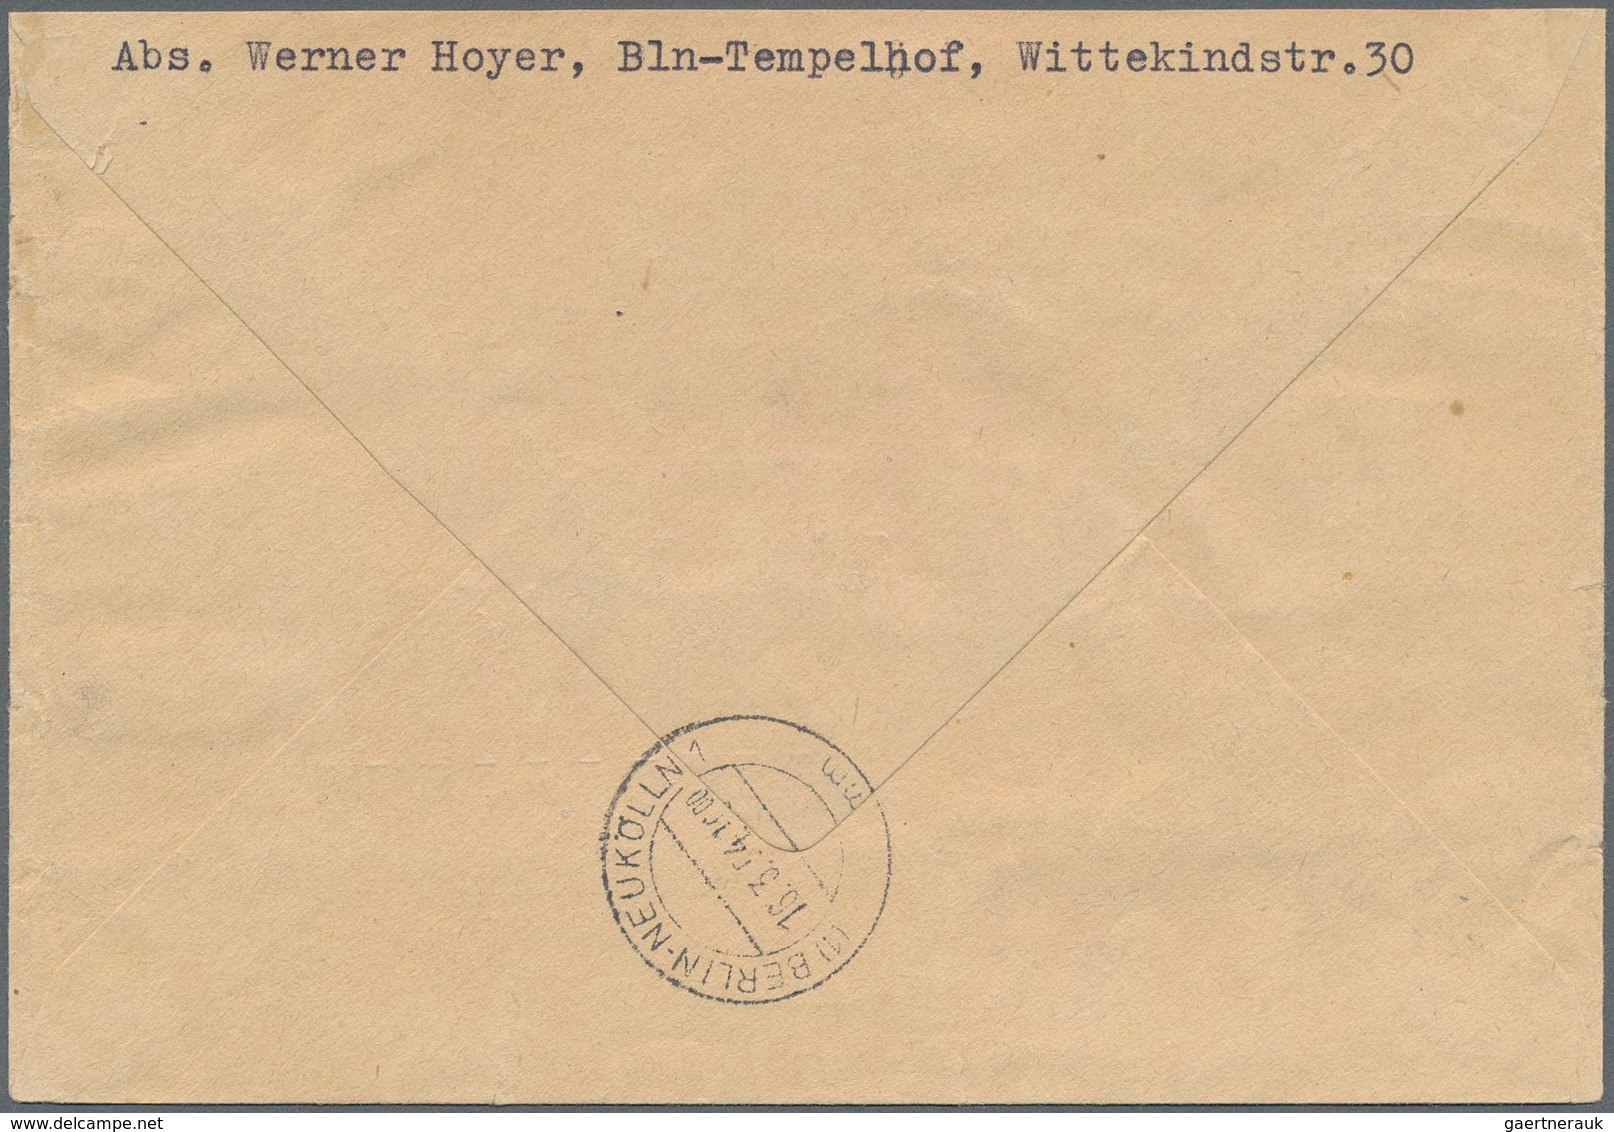 Berlin - Postschnelldienst: 30 U. 40 Pf. Männer I Mit Paar 5 Pf. Glocke Mitte Zusammen Auf Postschne - Lettres & Documents